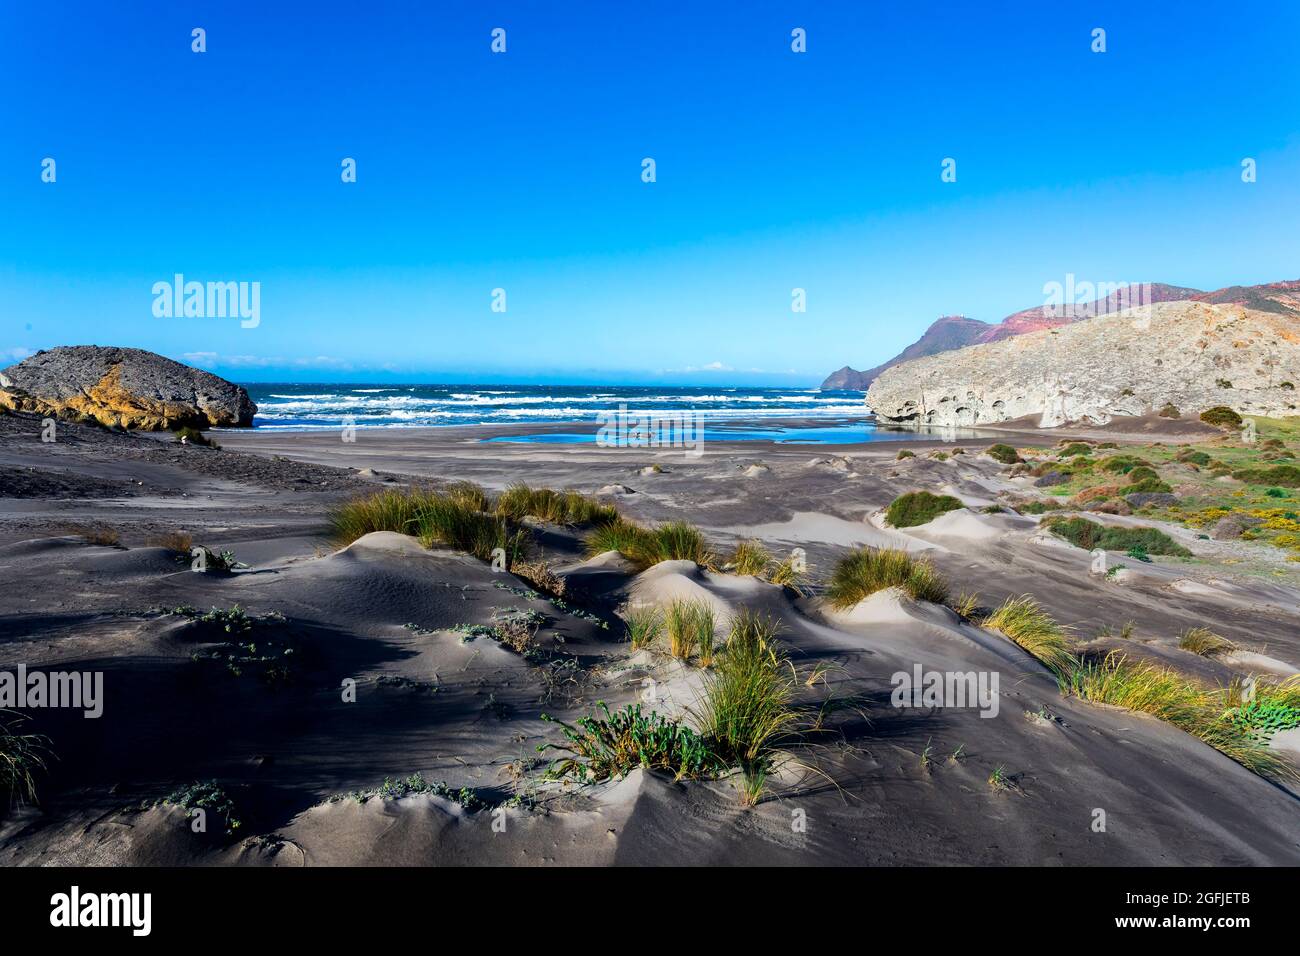 Paysage de la zone côtière Cabo de Gata, province d'Almeria, Andalousie, Espagne. Plage Playa de Monsul le long de la côte méditerranéenne, Cabo de Gata N Banque D'Images